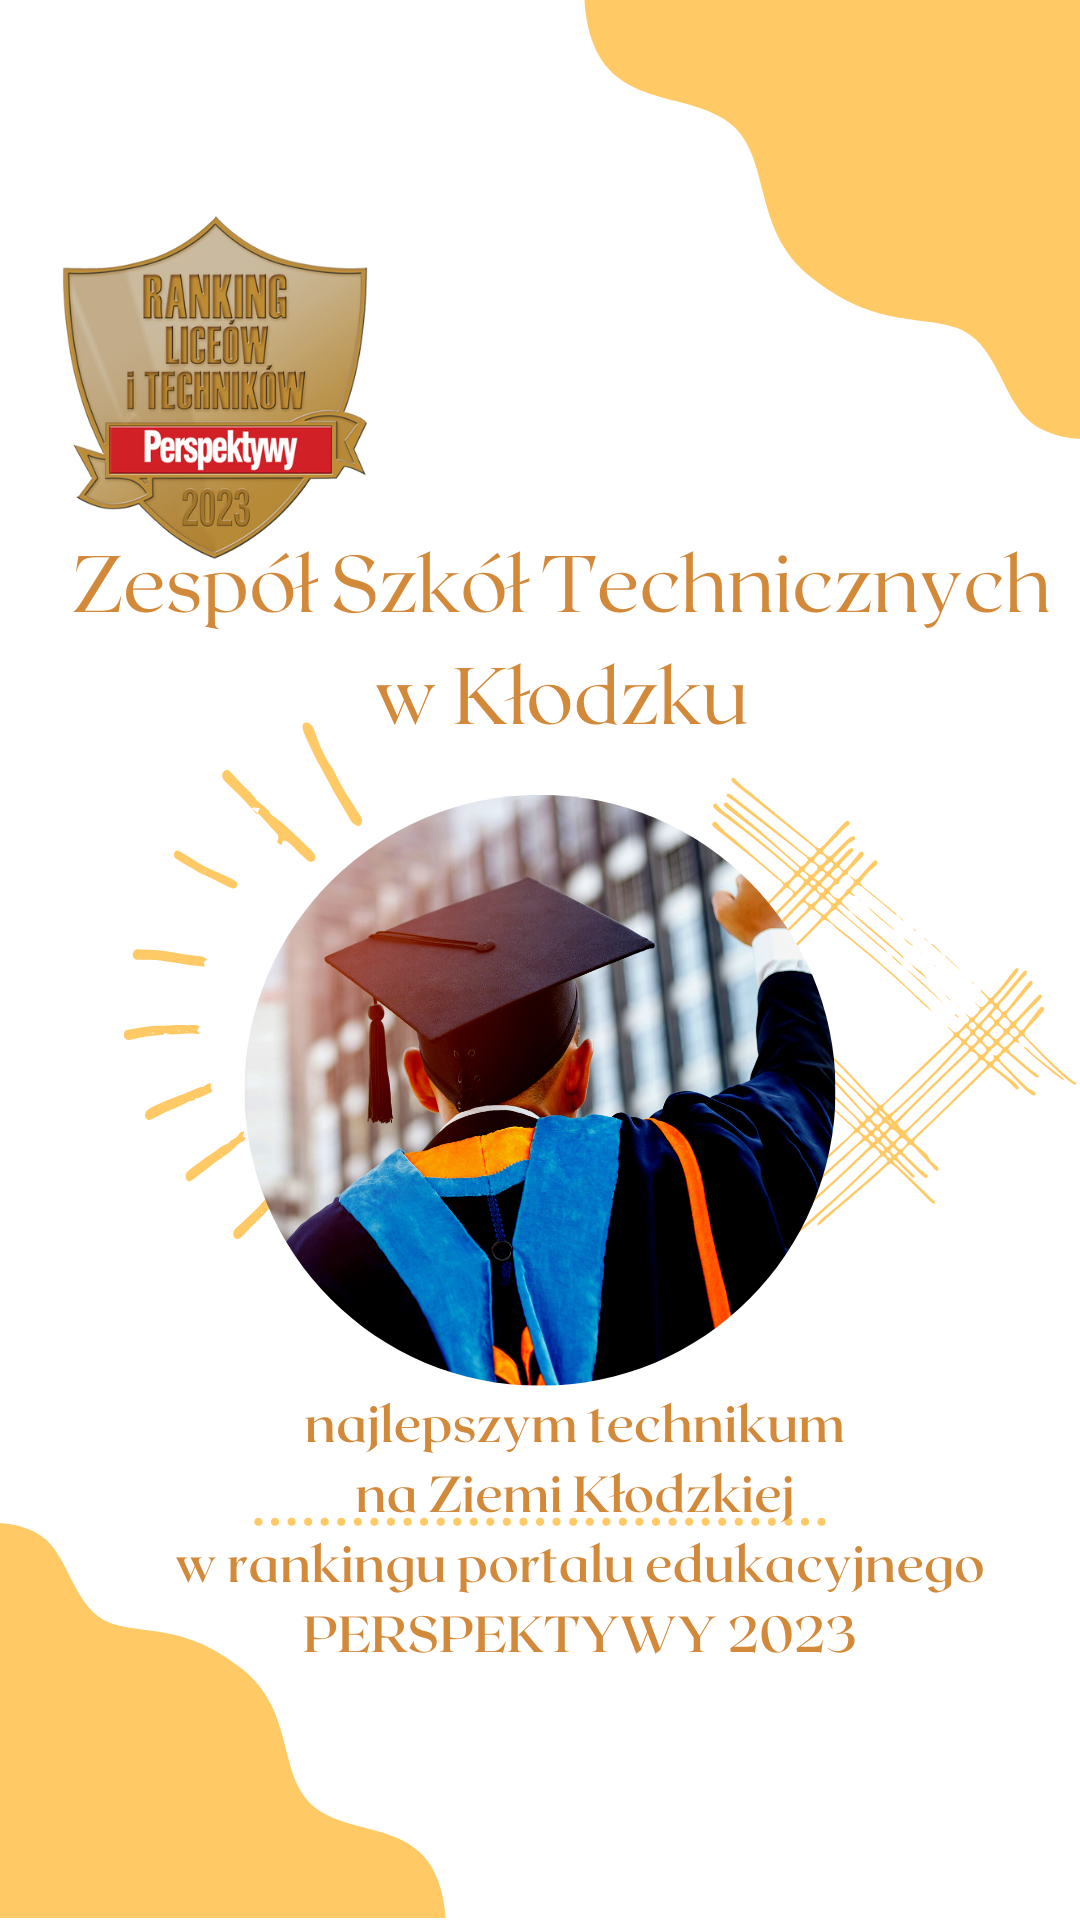 Zespół Szkół Technicznych w Kłodzku najlepszym technikum na Ziemi Kłodzkiej w rankingu portalu edukacyjnego PERSPEKTYWY 2023